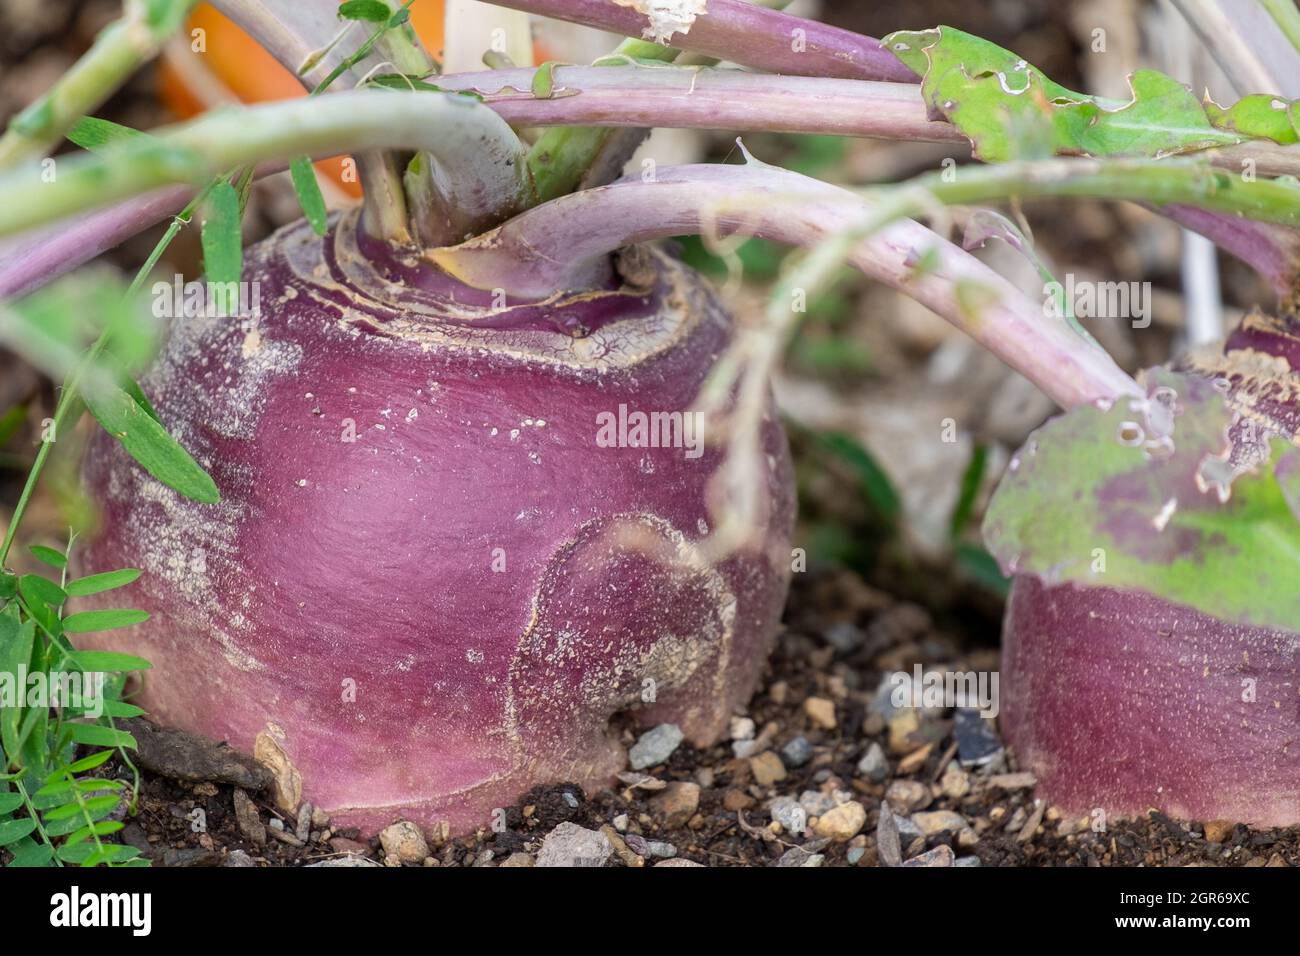 Ein großes rundes organisches, violett gefärbtes Rüben- oder Rutabaga-Wurzelgemüse, das in einem Hochbeet-Garten wächst. Der Boden auf dem Boden ist dunkel und reich. Stockfoto